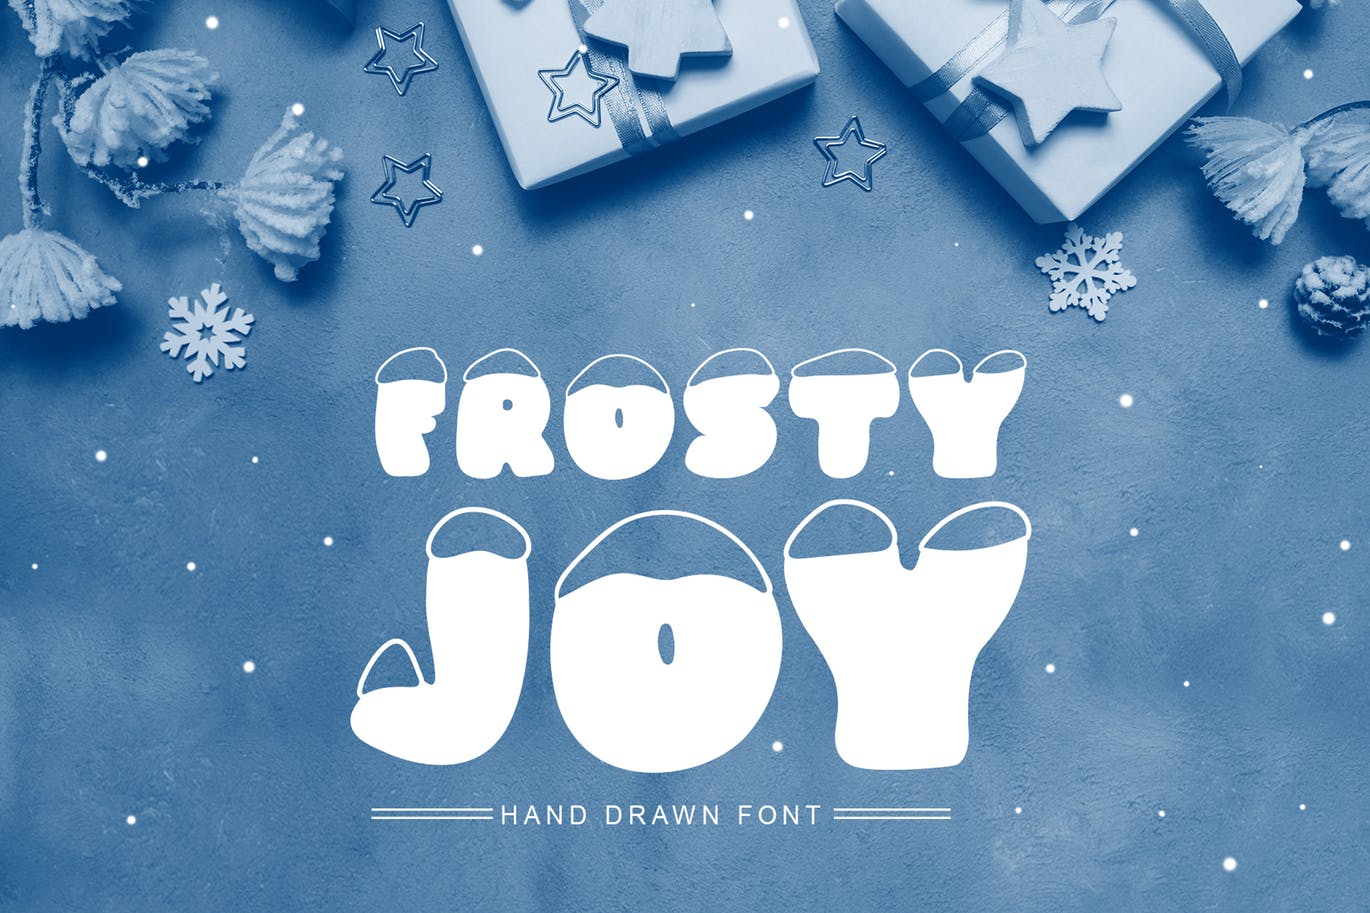 斯堪的纳维亚风格可爱积雪字体16素材精选 Frosty Joy Hand Drawn Display Font插图